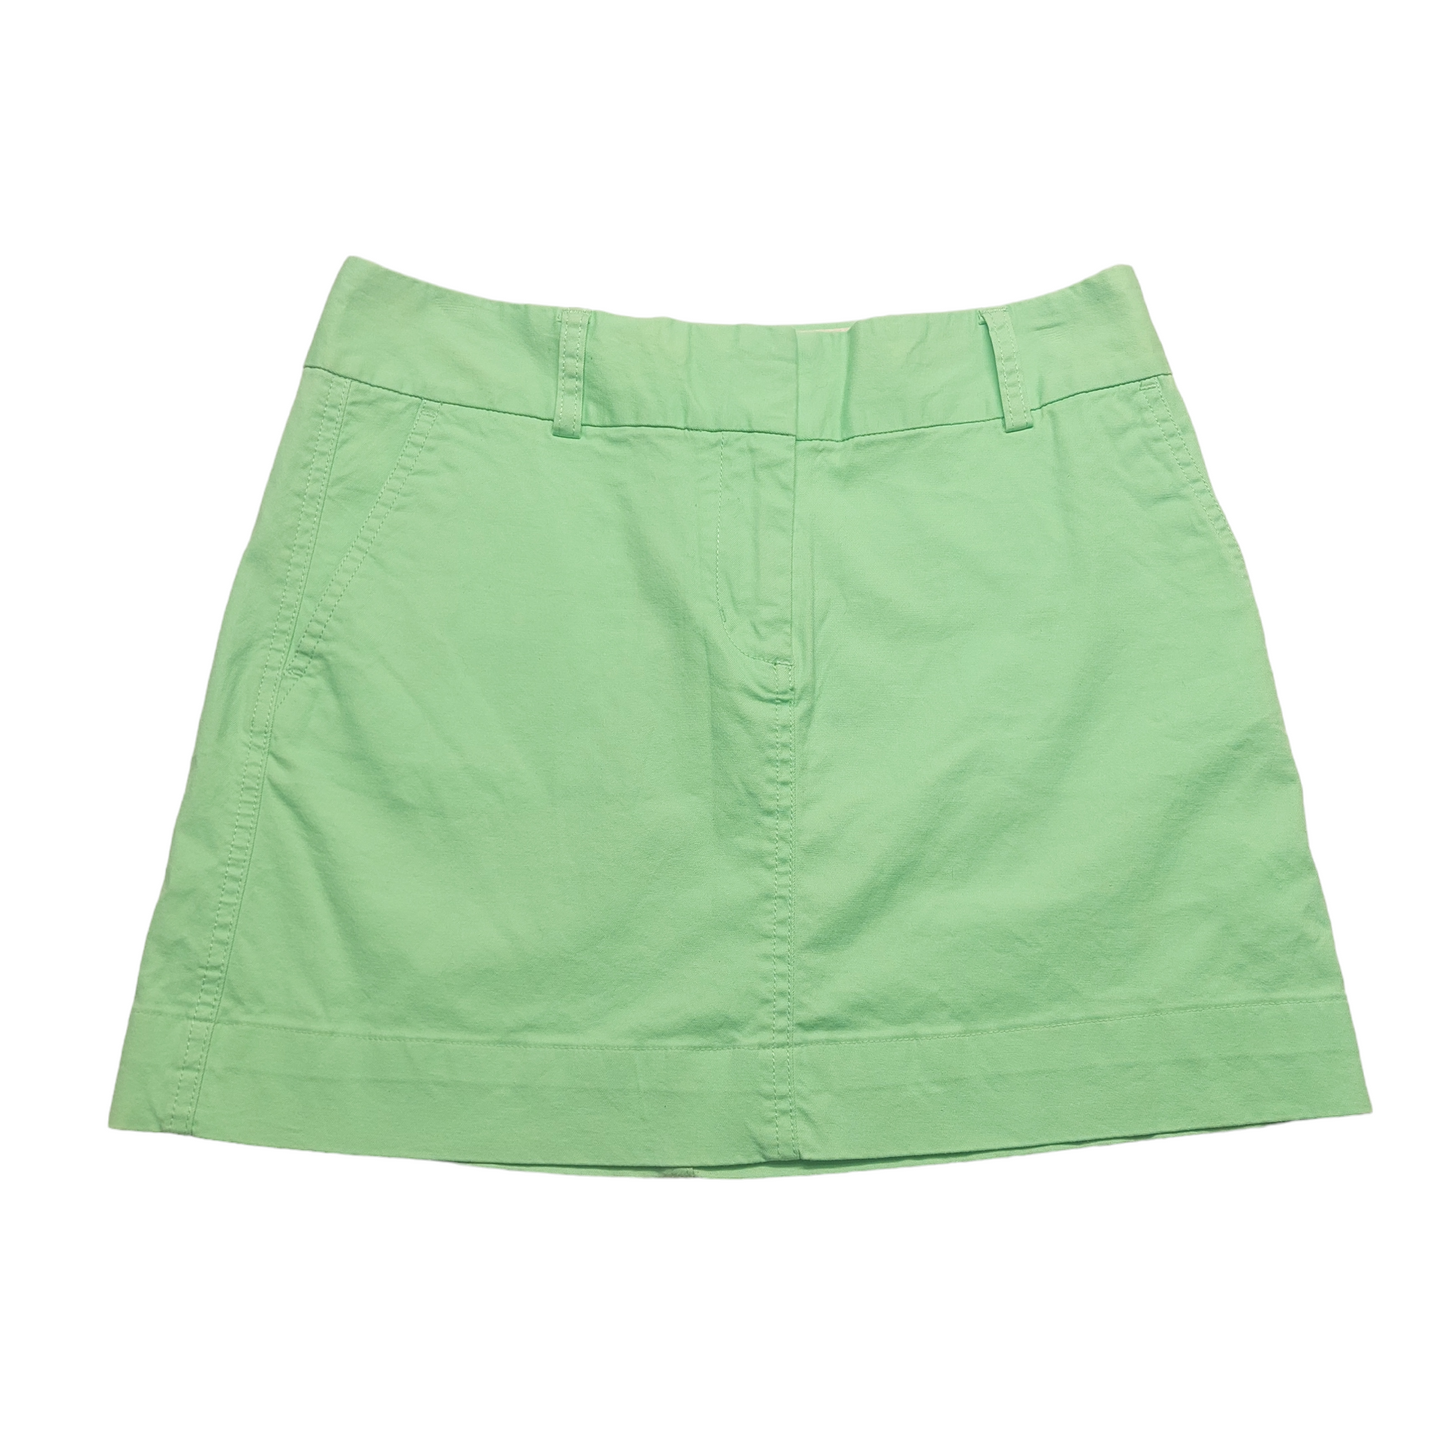 Green Skirt Mini & Short Vineyard Vines, Size 4